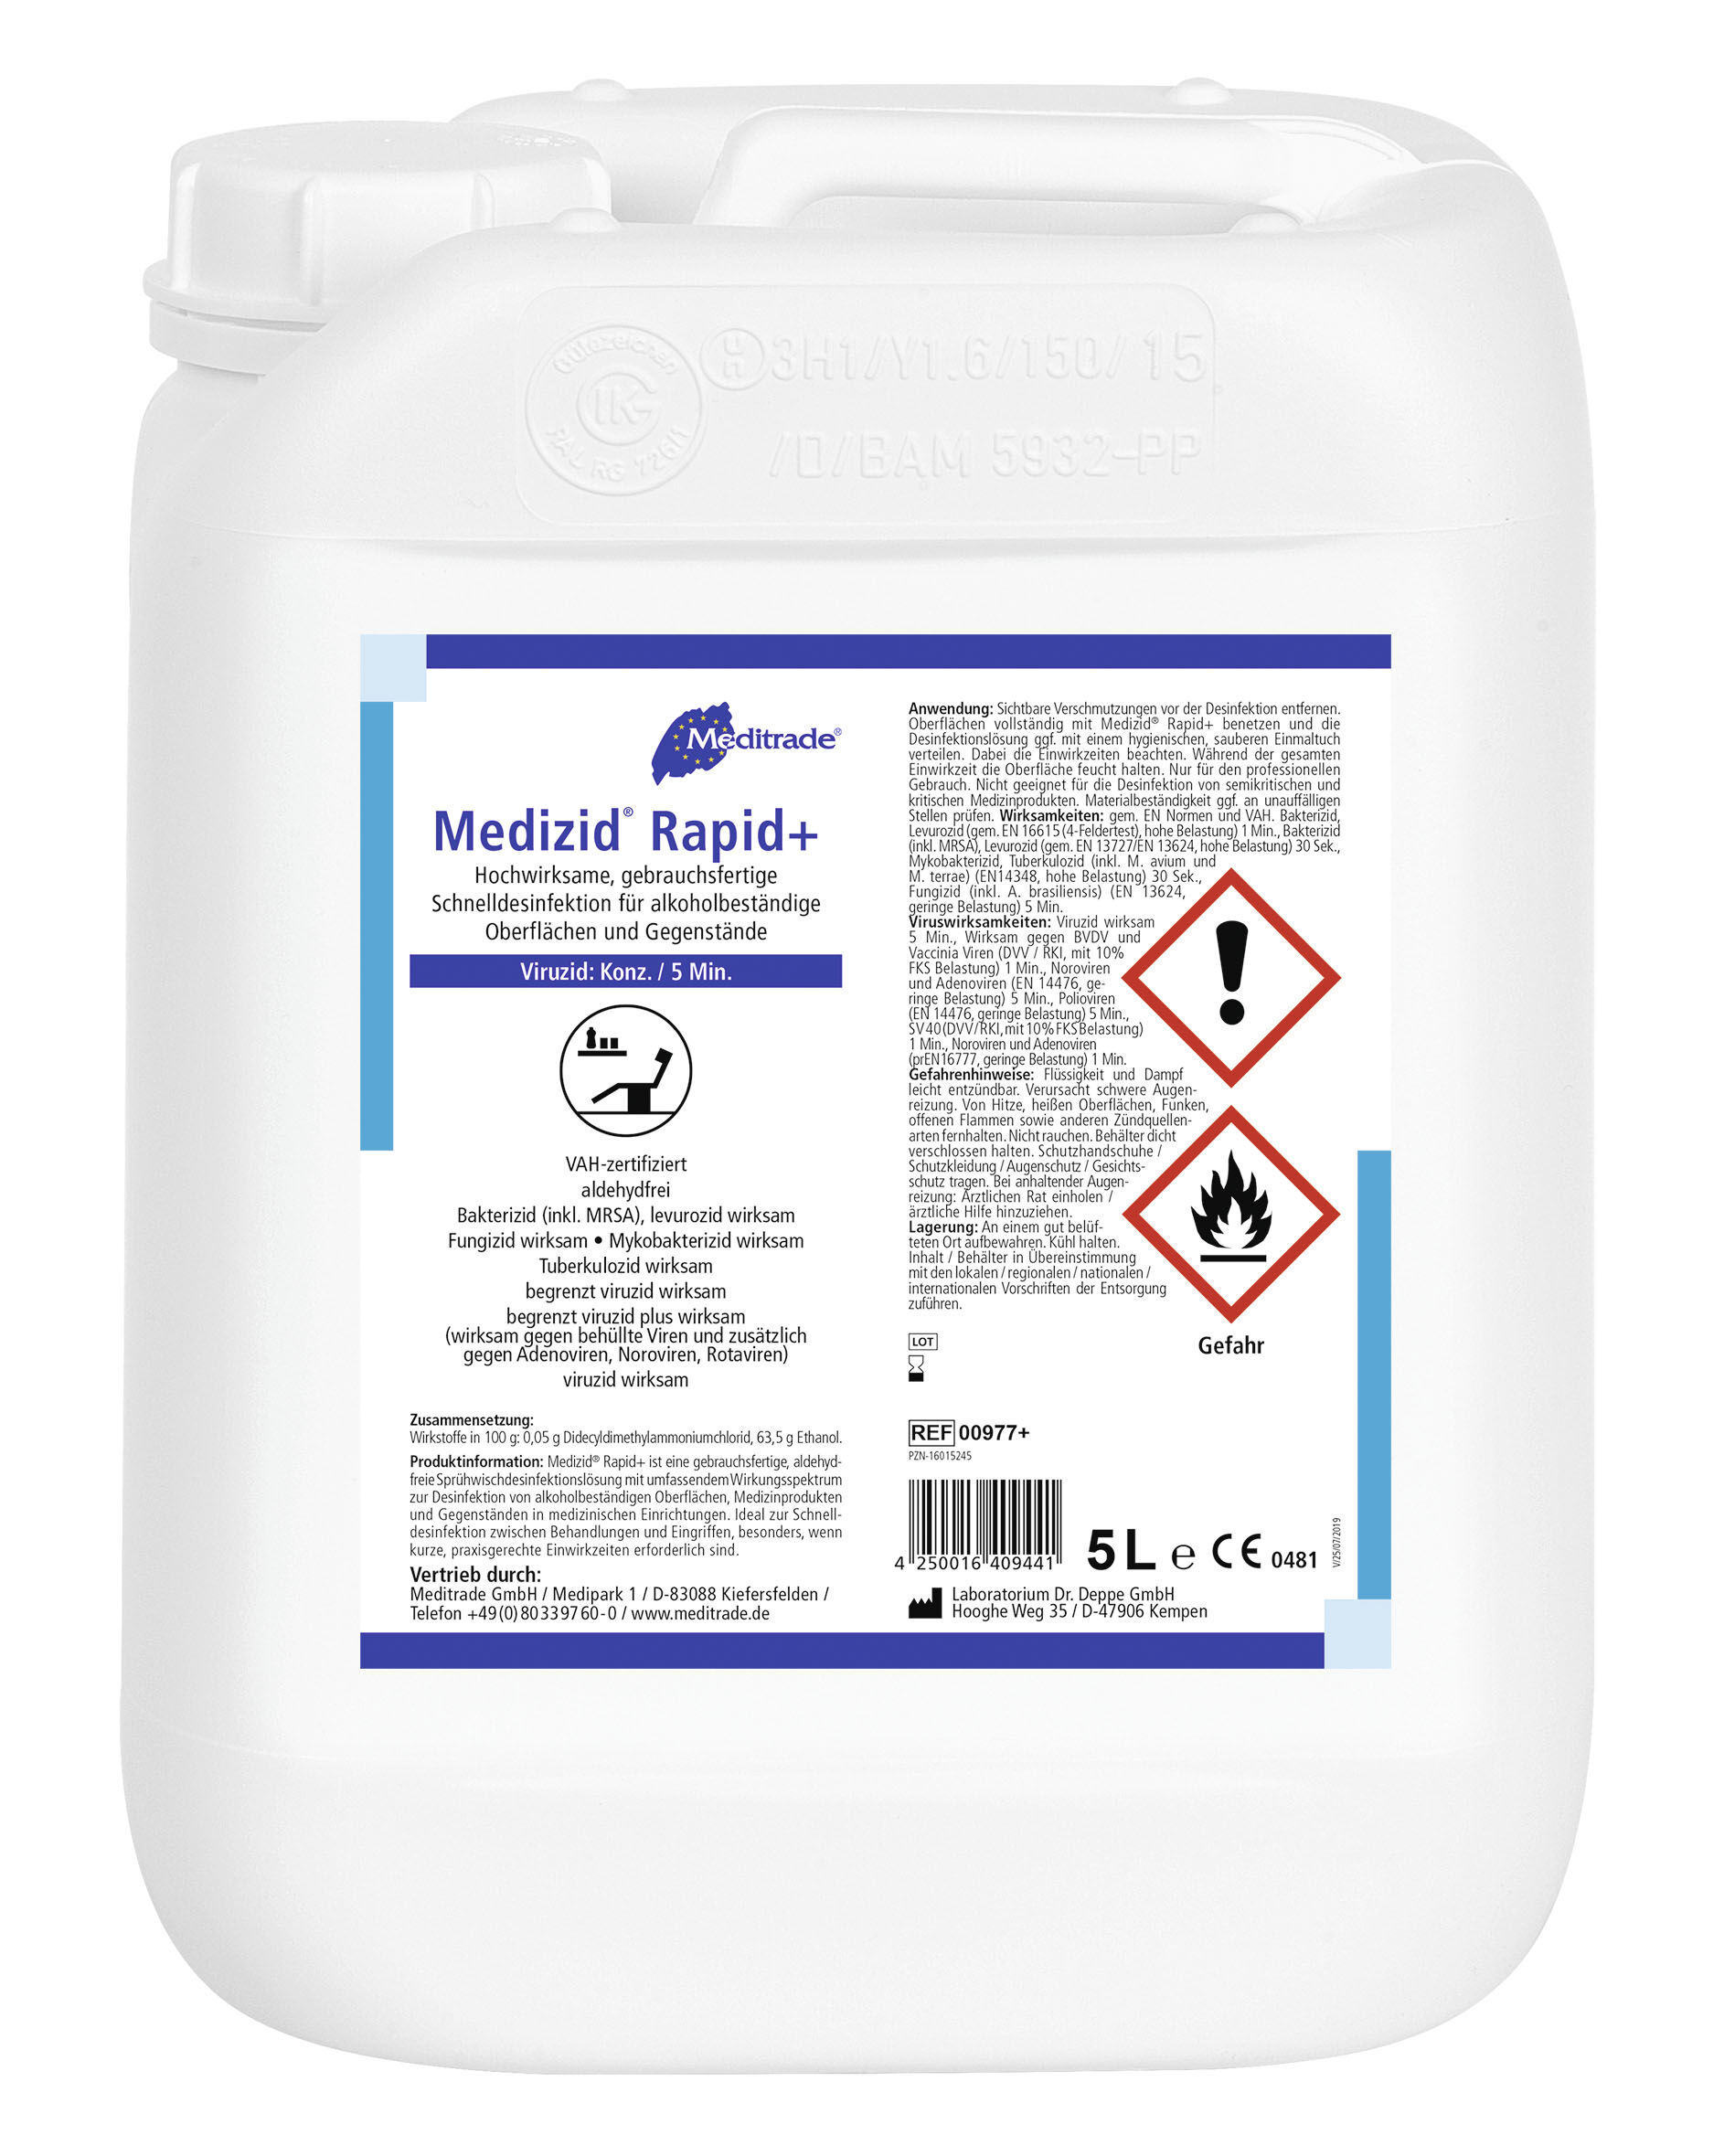 Medizin Rapid+ Schnelldesinfektion für alkoholbeständige Oberflächen von Medizinprodukten im 5-Liter-Kanister